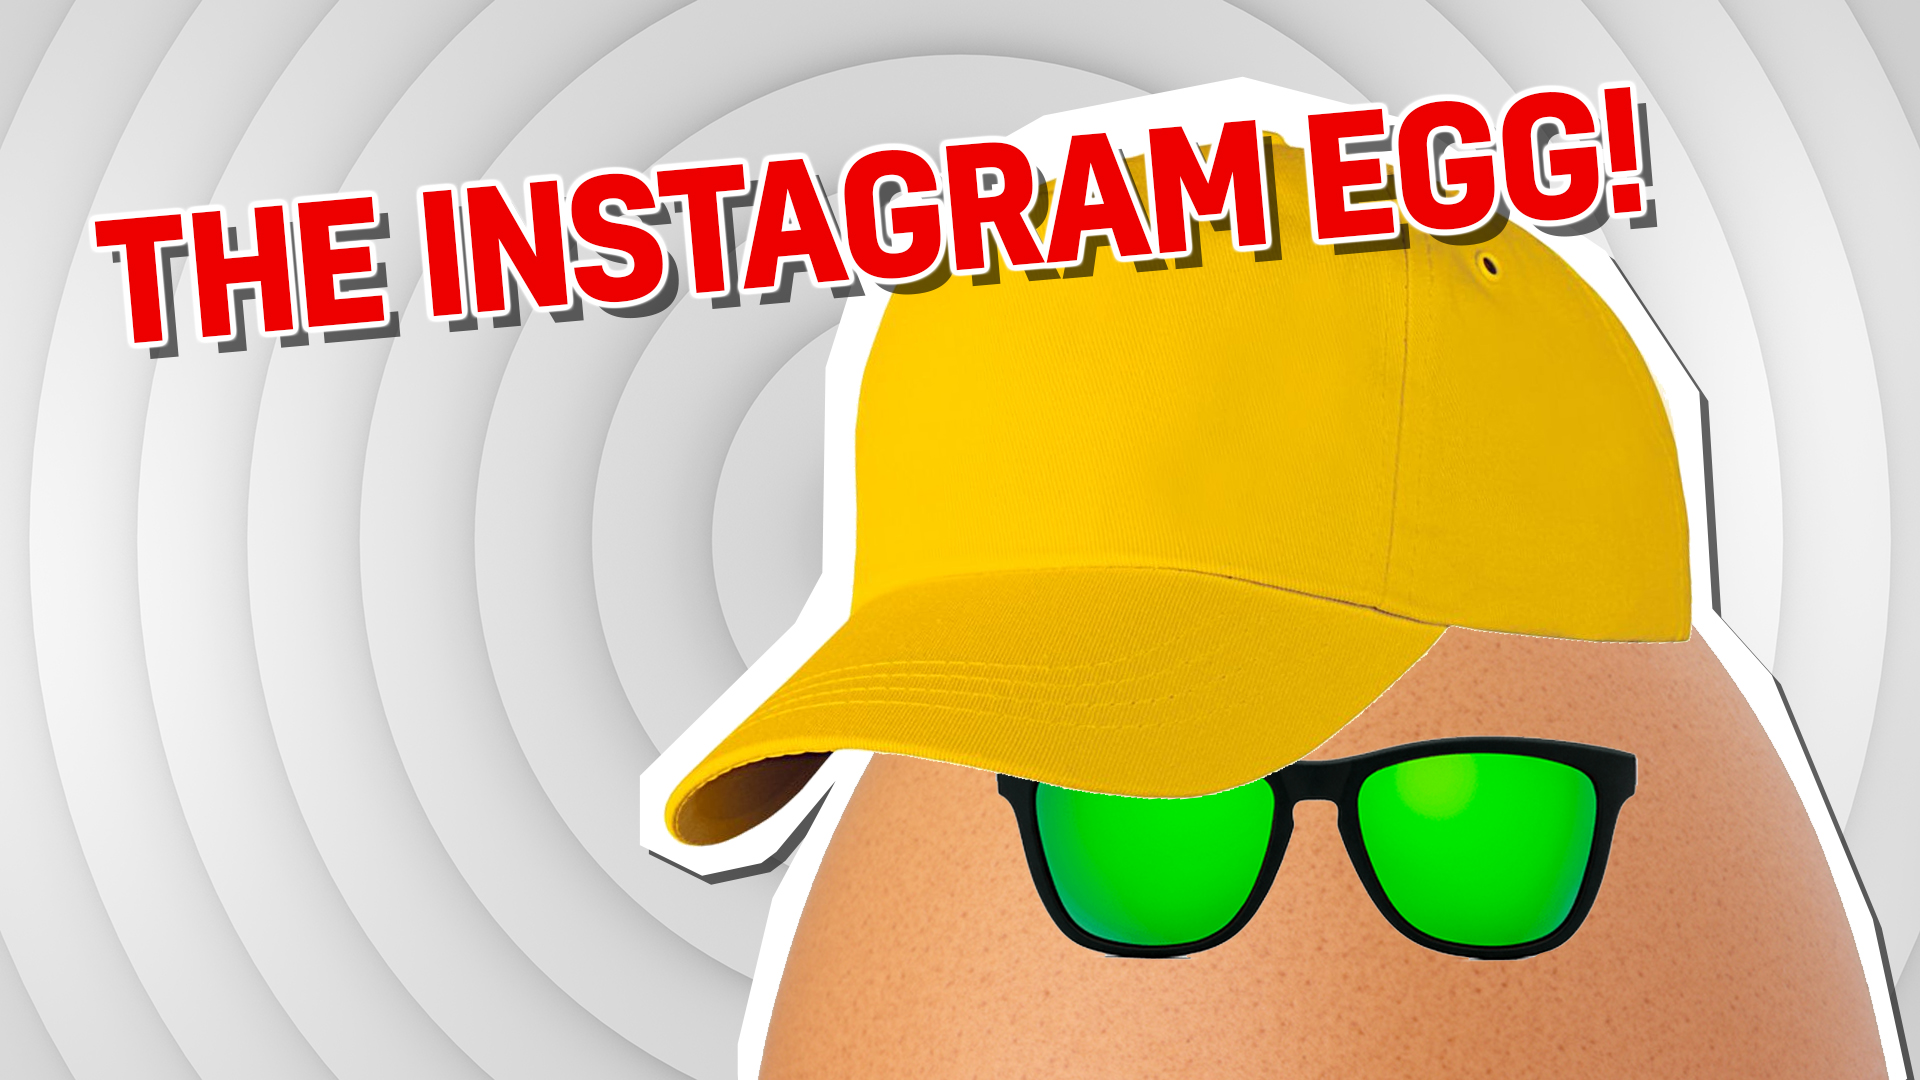 The world-famous Instagram egg